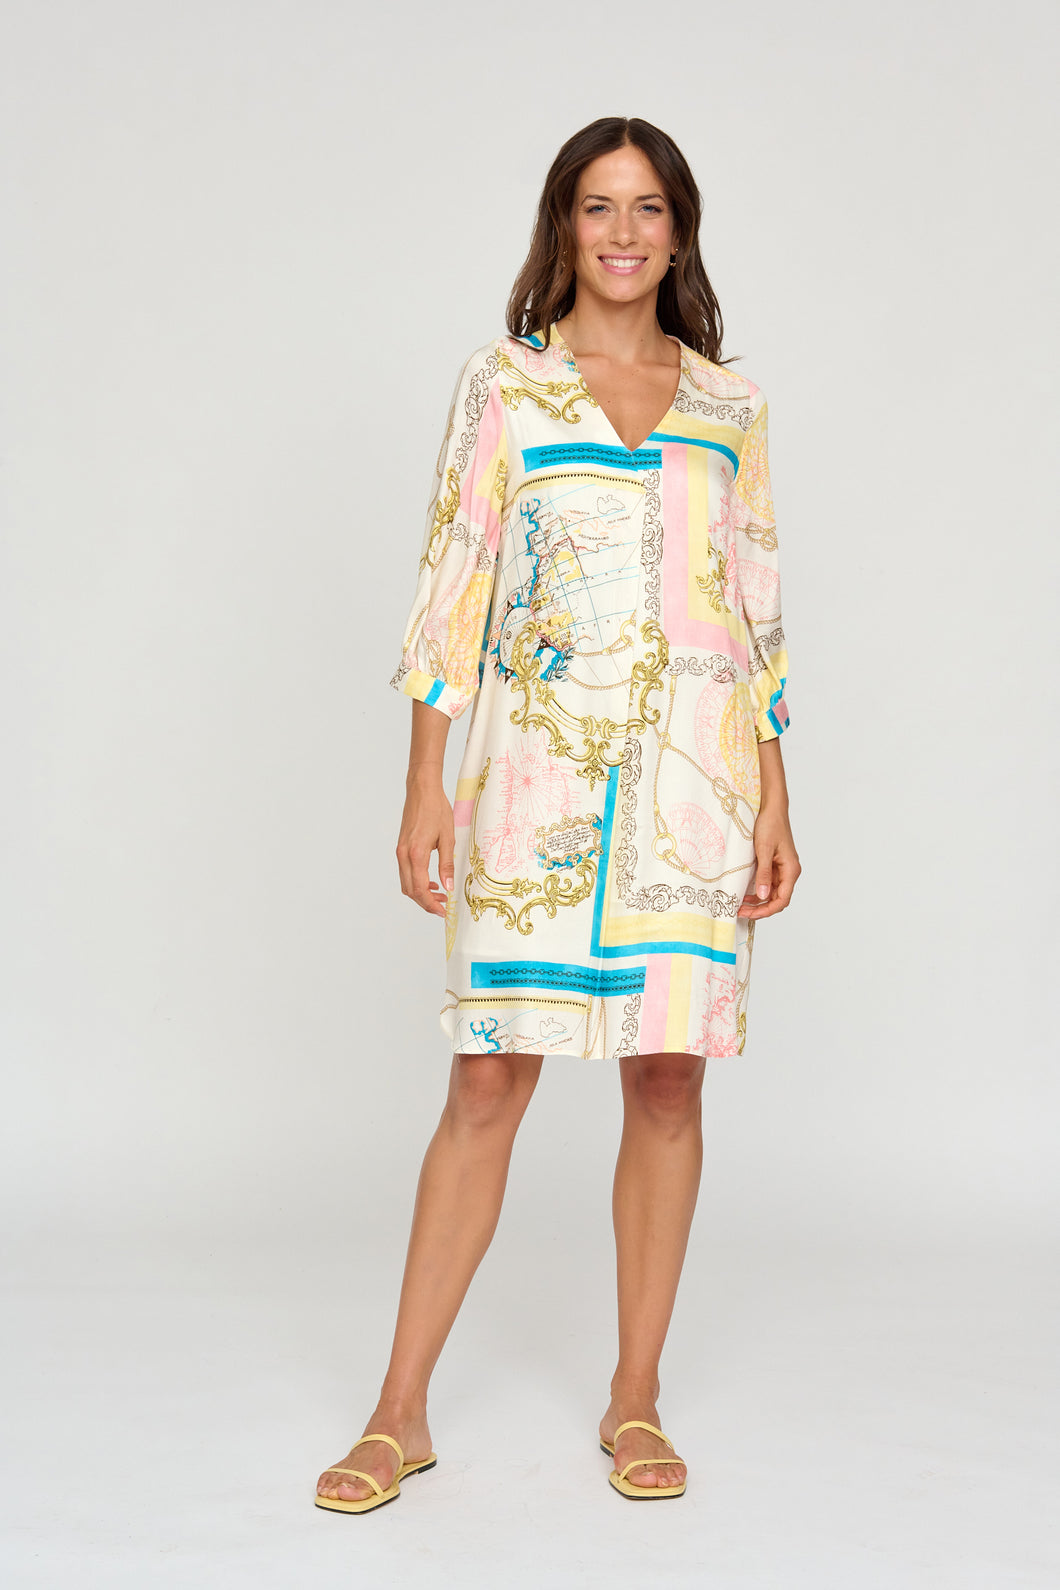 Bariloche - Luezas - Versace style print Dress - Lemon & Pink